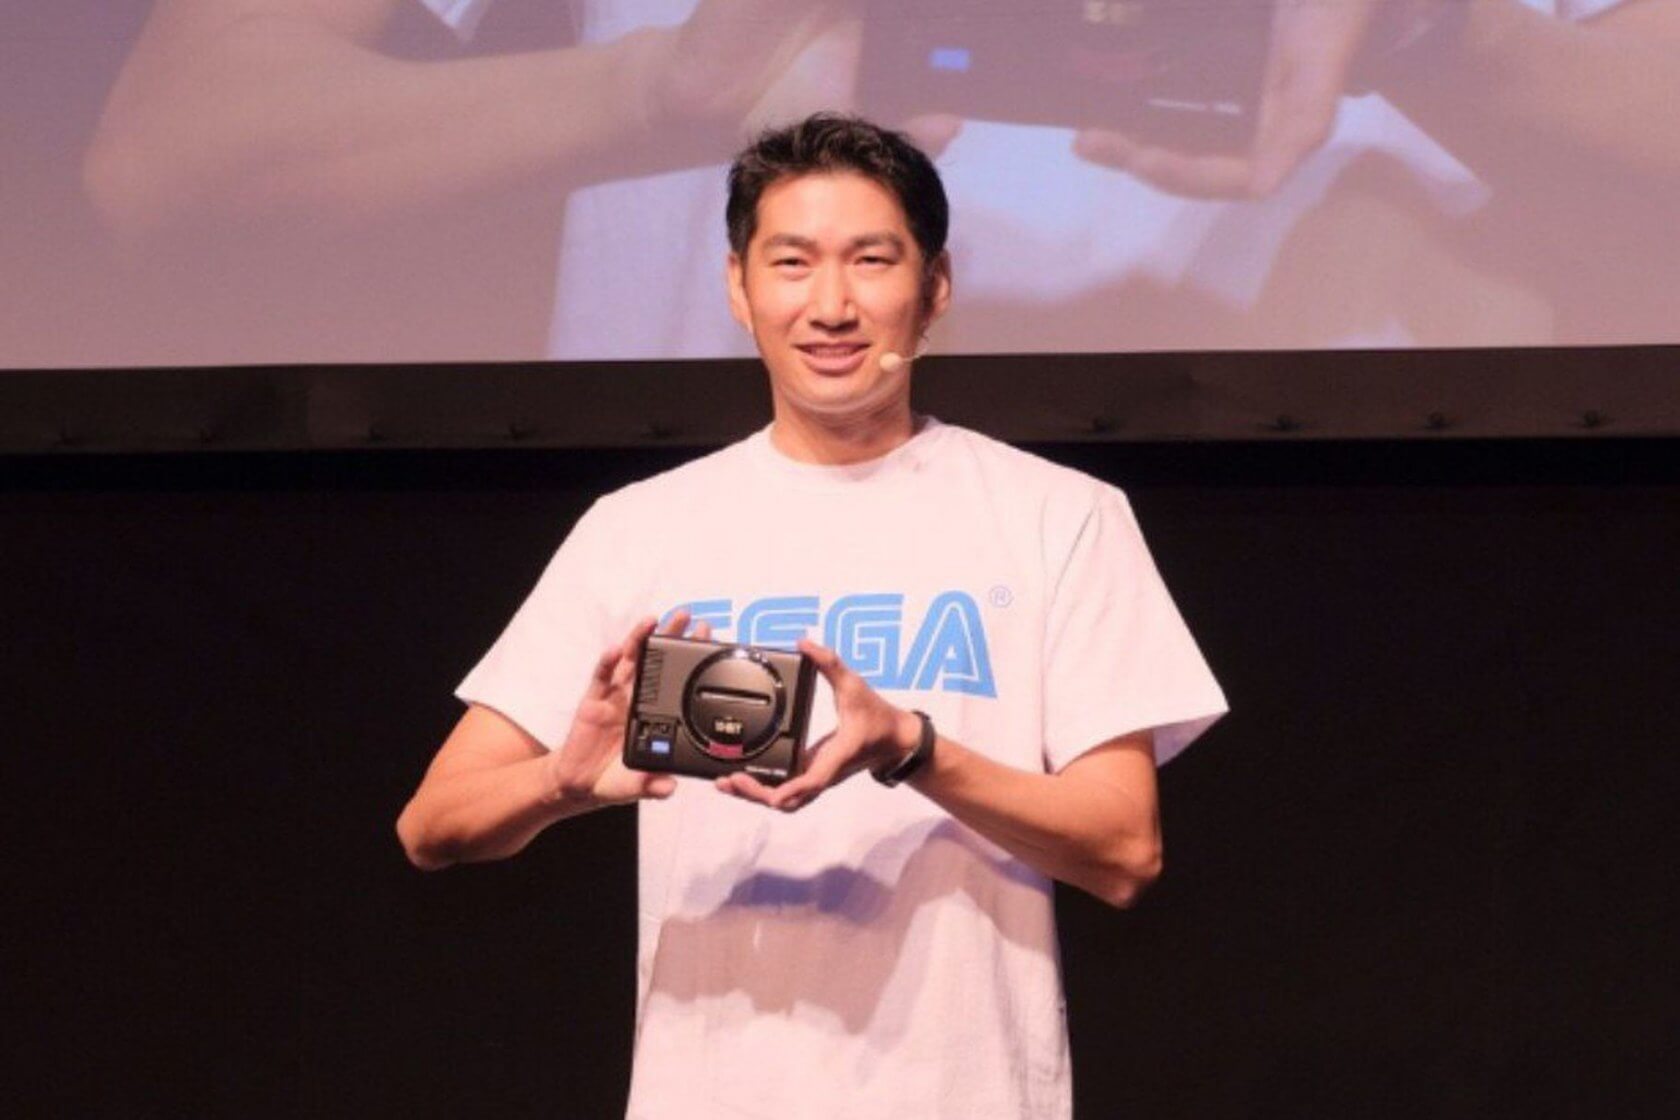 Sega pushes Mega Drive Mini release date to 2019